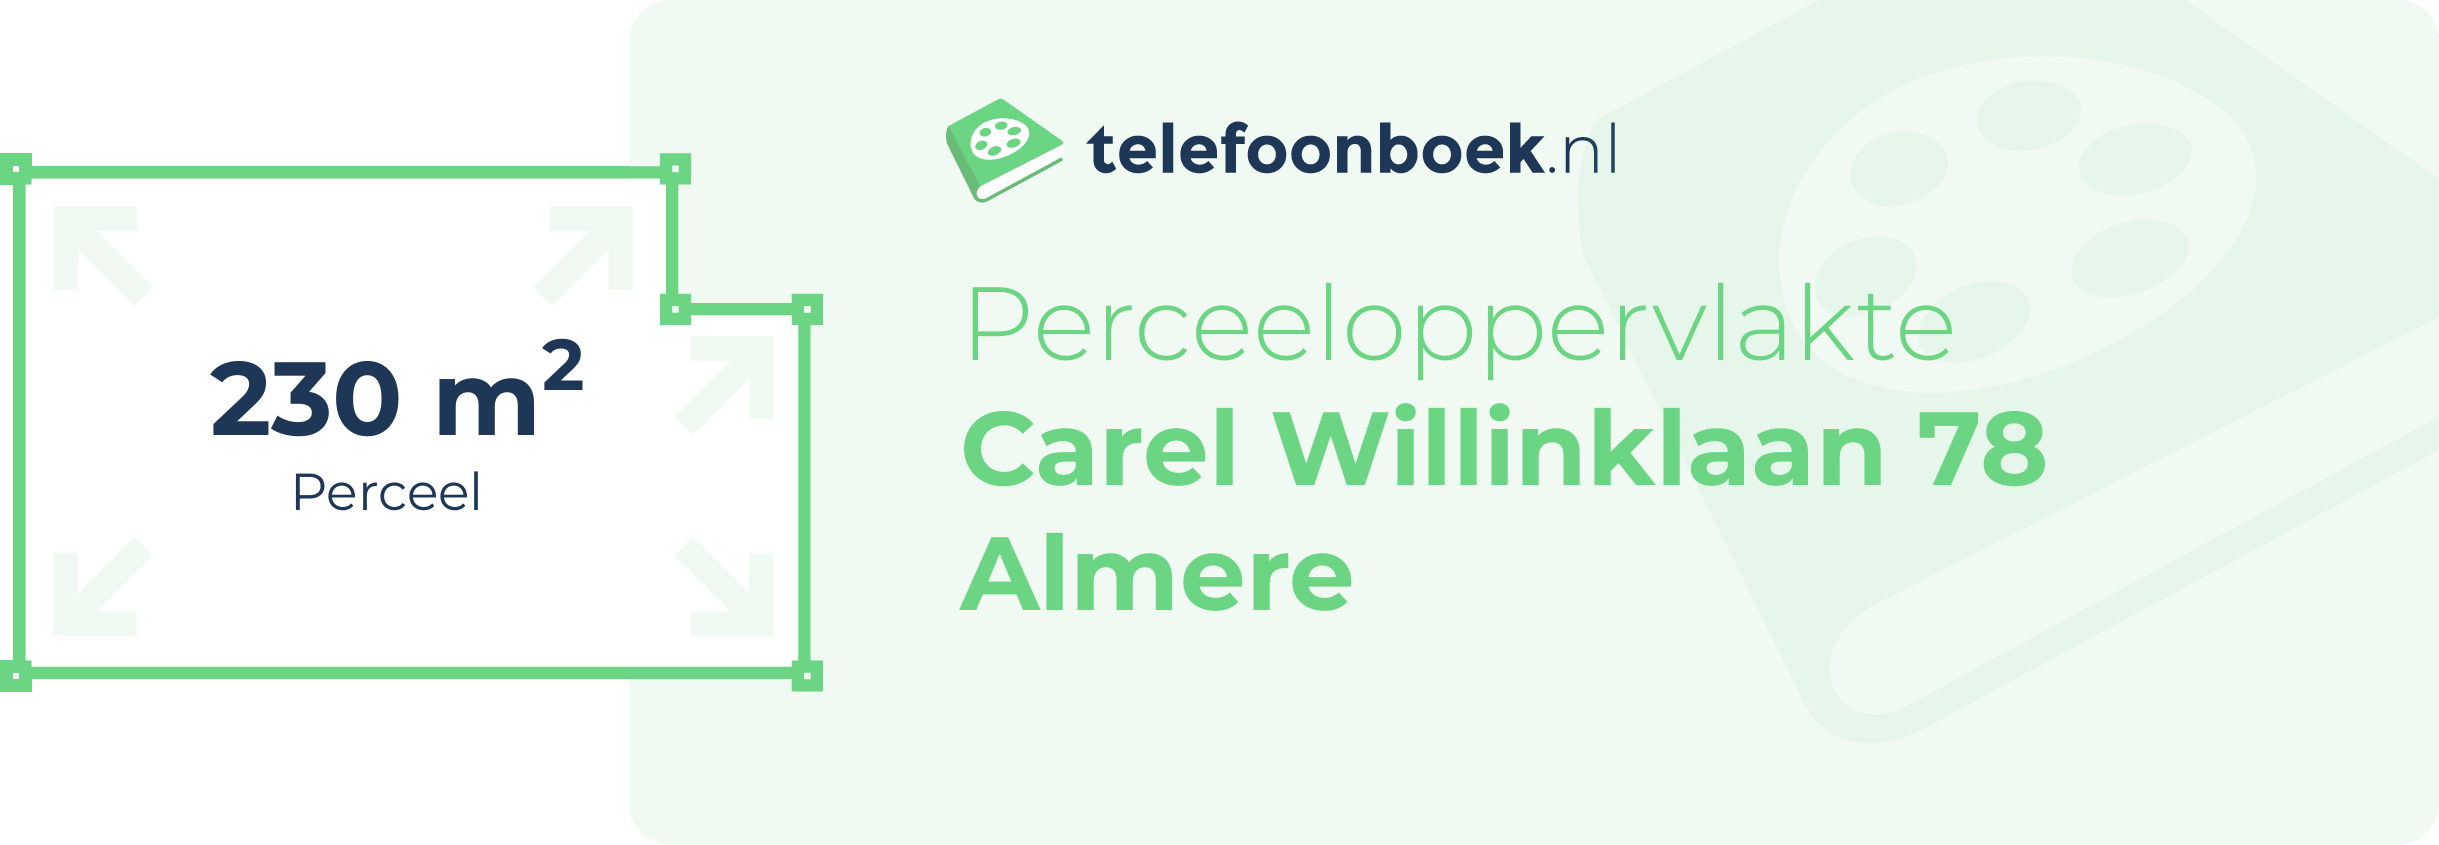 Perceeloppervlakte Carel Willinklaan 78 Almere